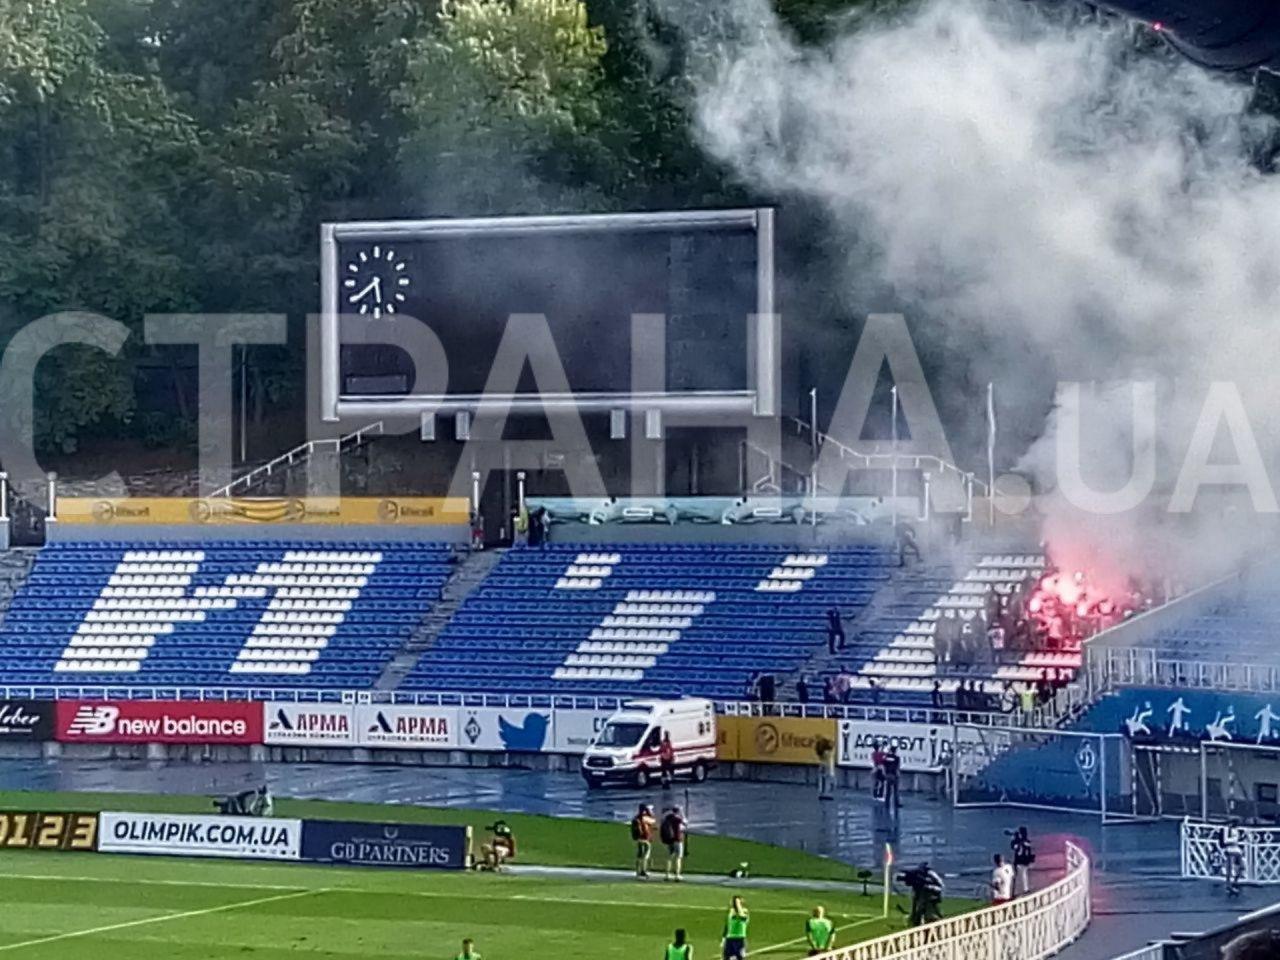 Ультрас "Динамо" ворвались на стадион во время первого матча клуба при Луческу и зажгли файеры. Фото: Страна